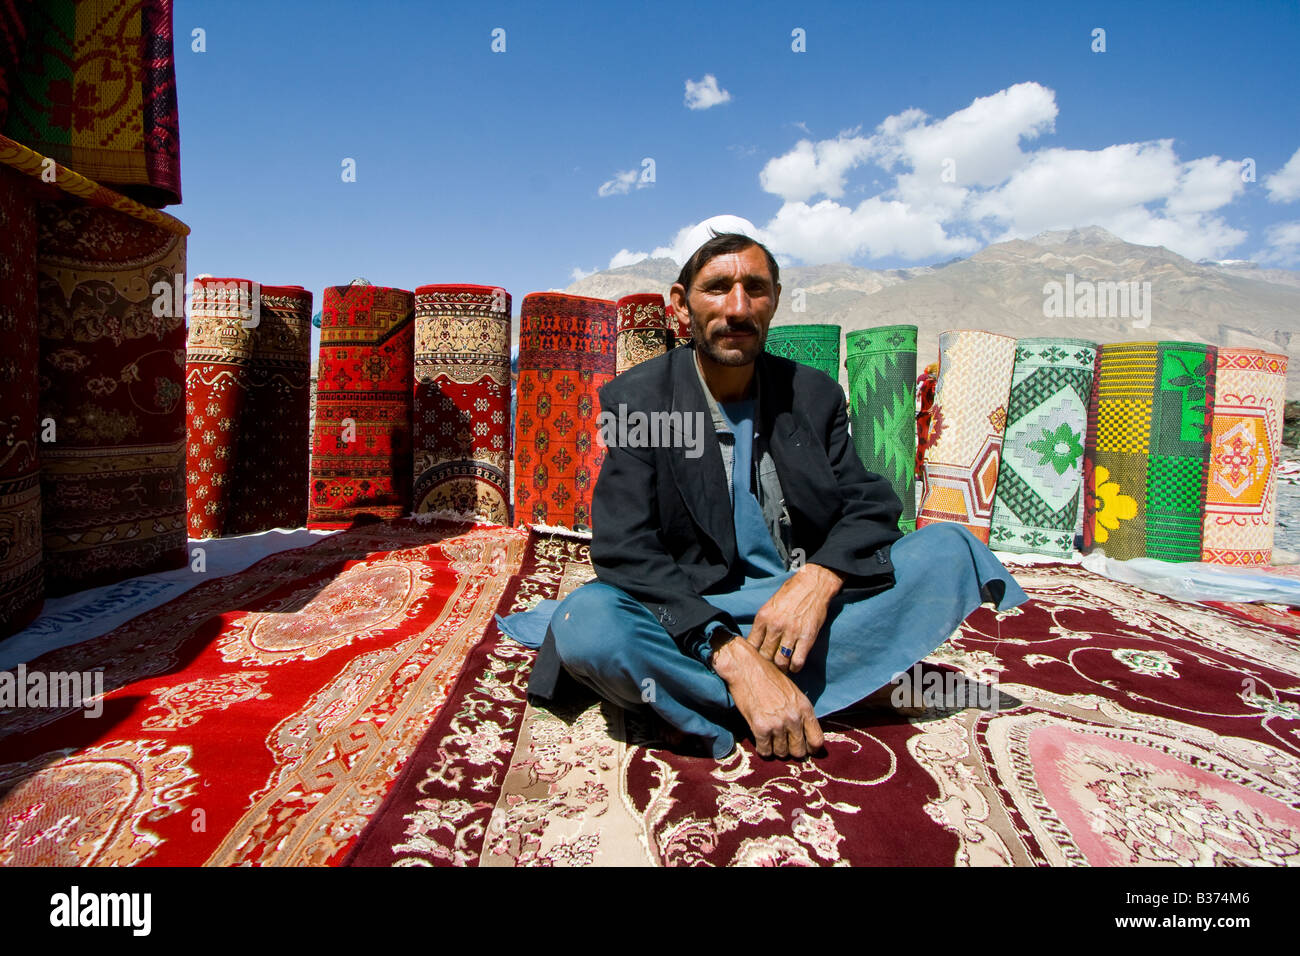 Tapis afghan à l'homme de vendre le Tadjikistan Afghanistan Ishkashim marché près de la frontière du Tadjikistan Banque D'Images